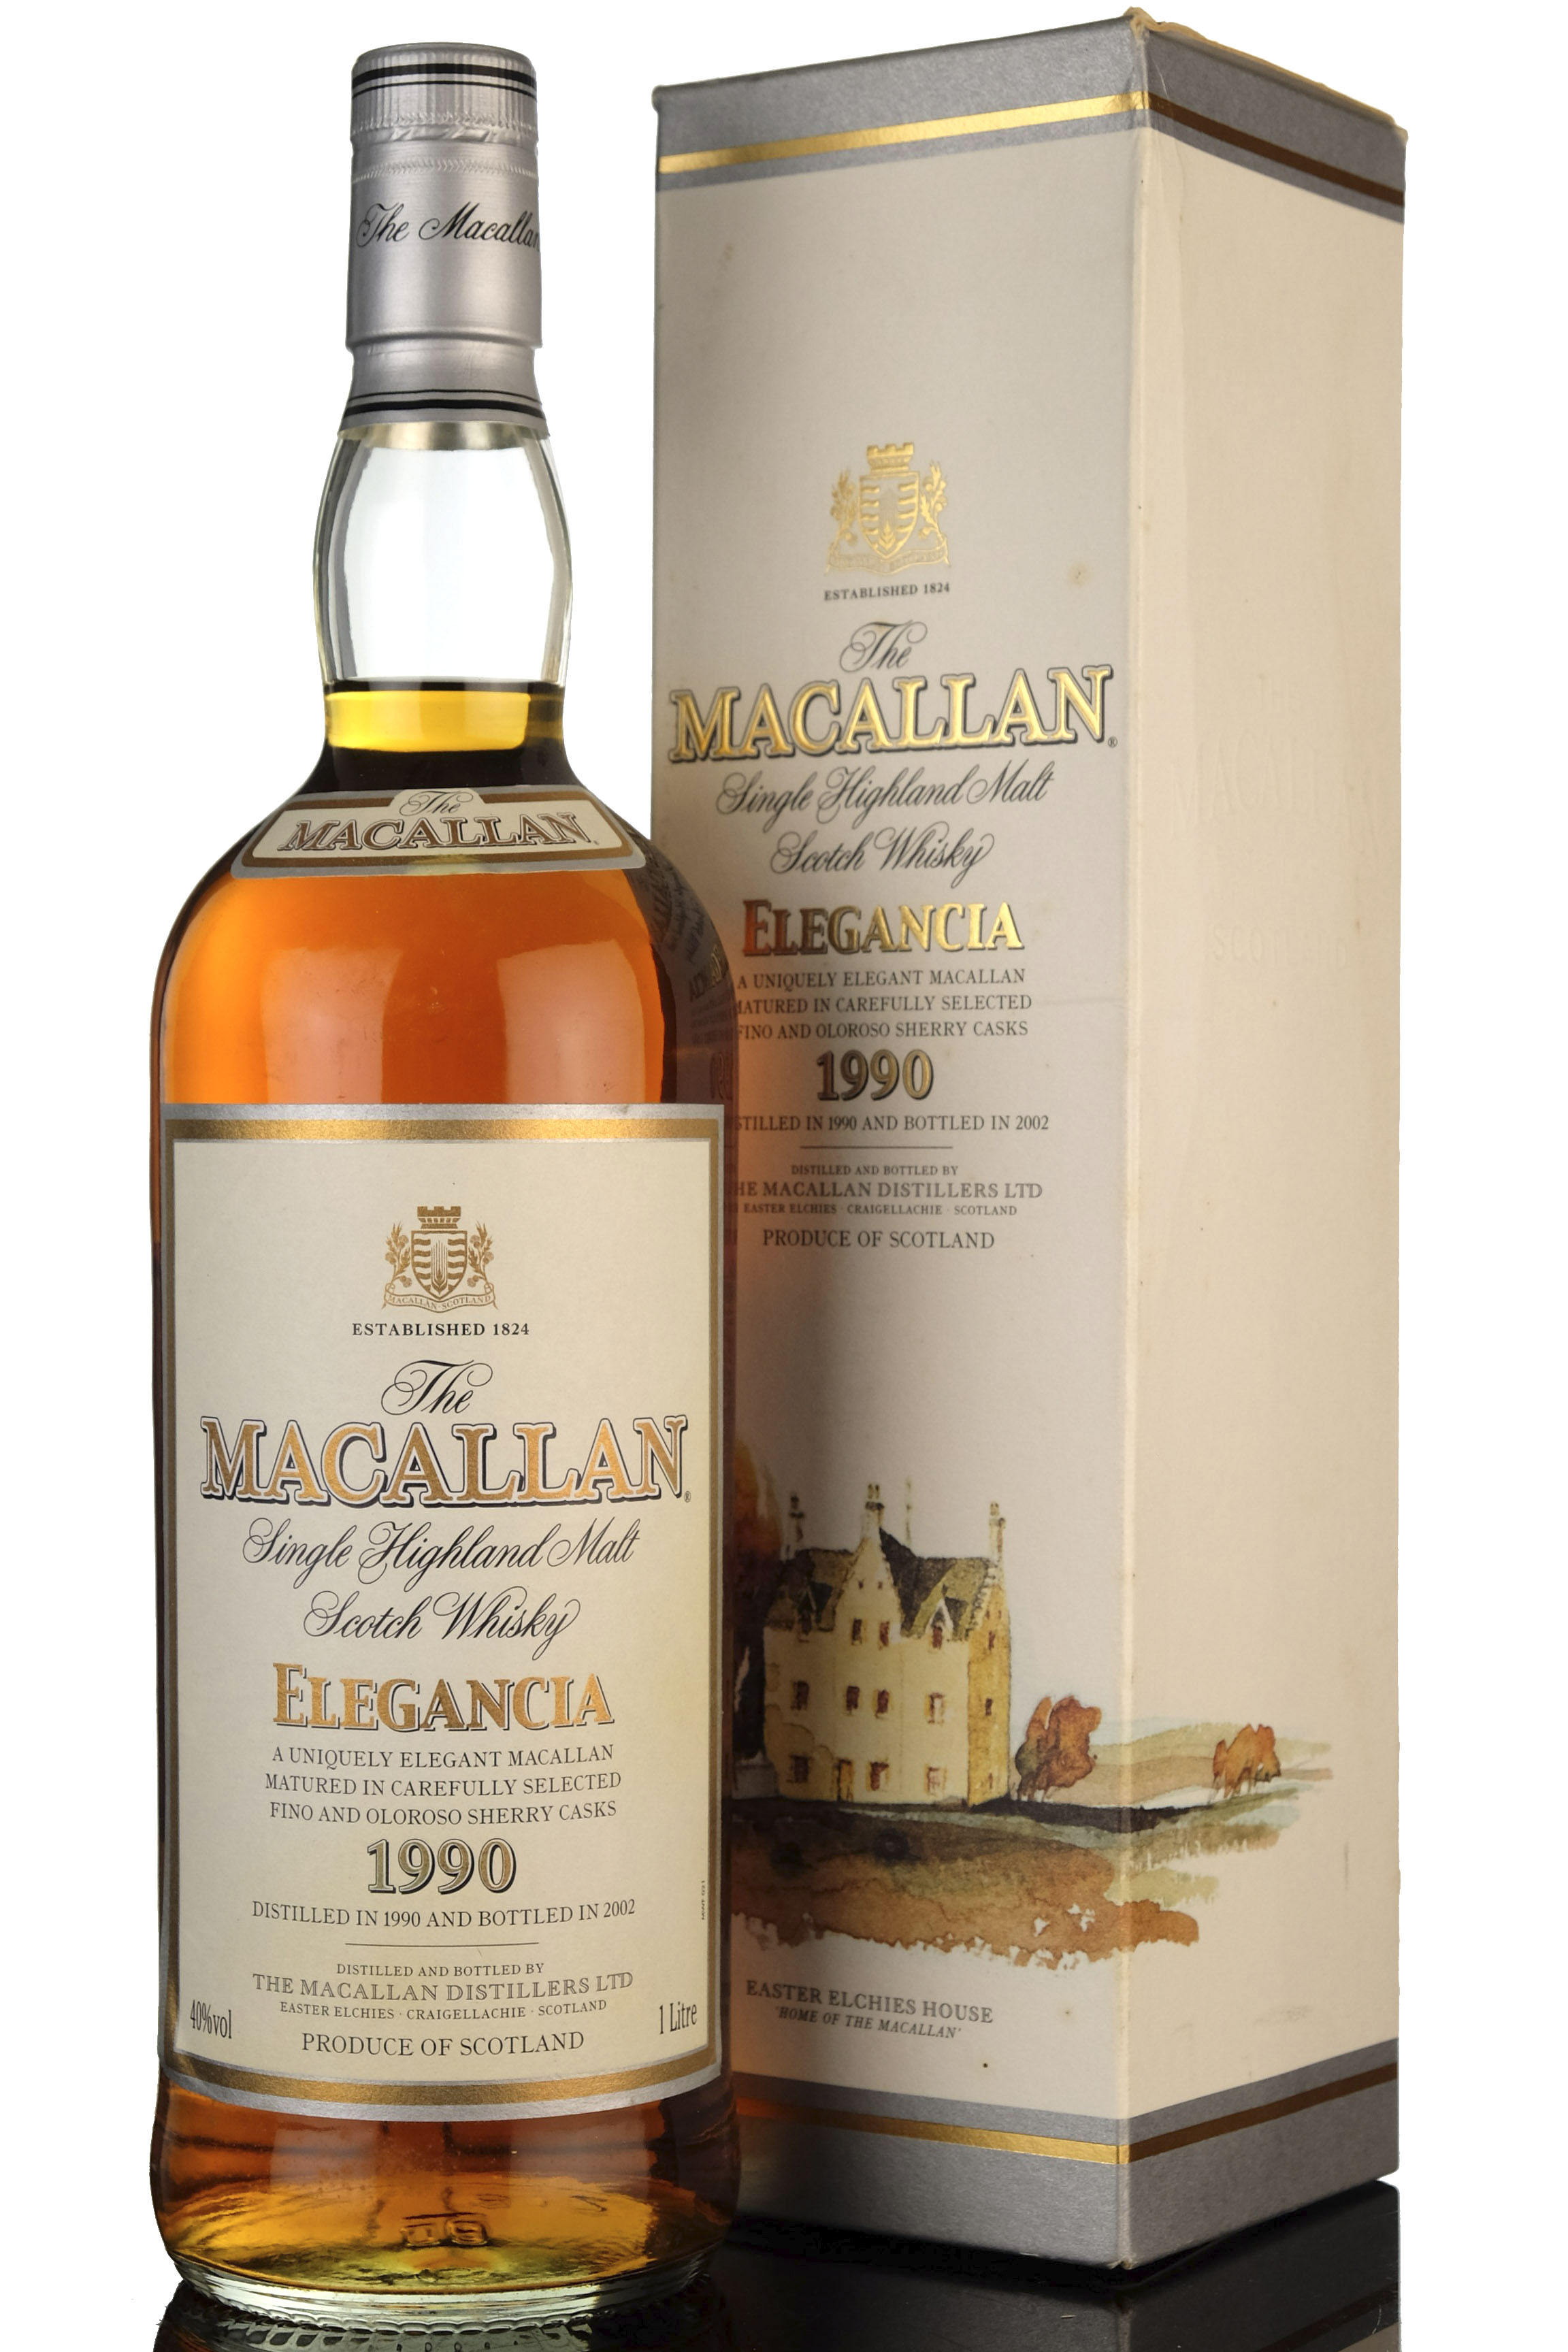 Macallan 1990-2002 - Elegancia - 1 Litre